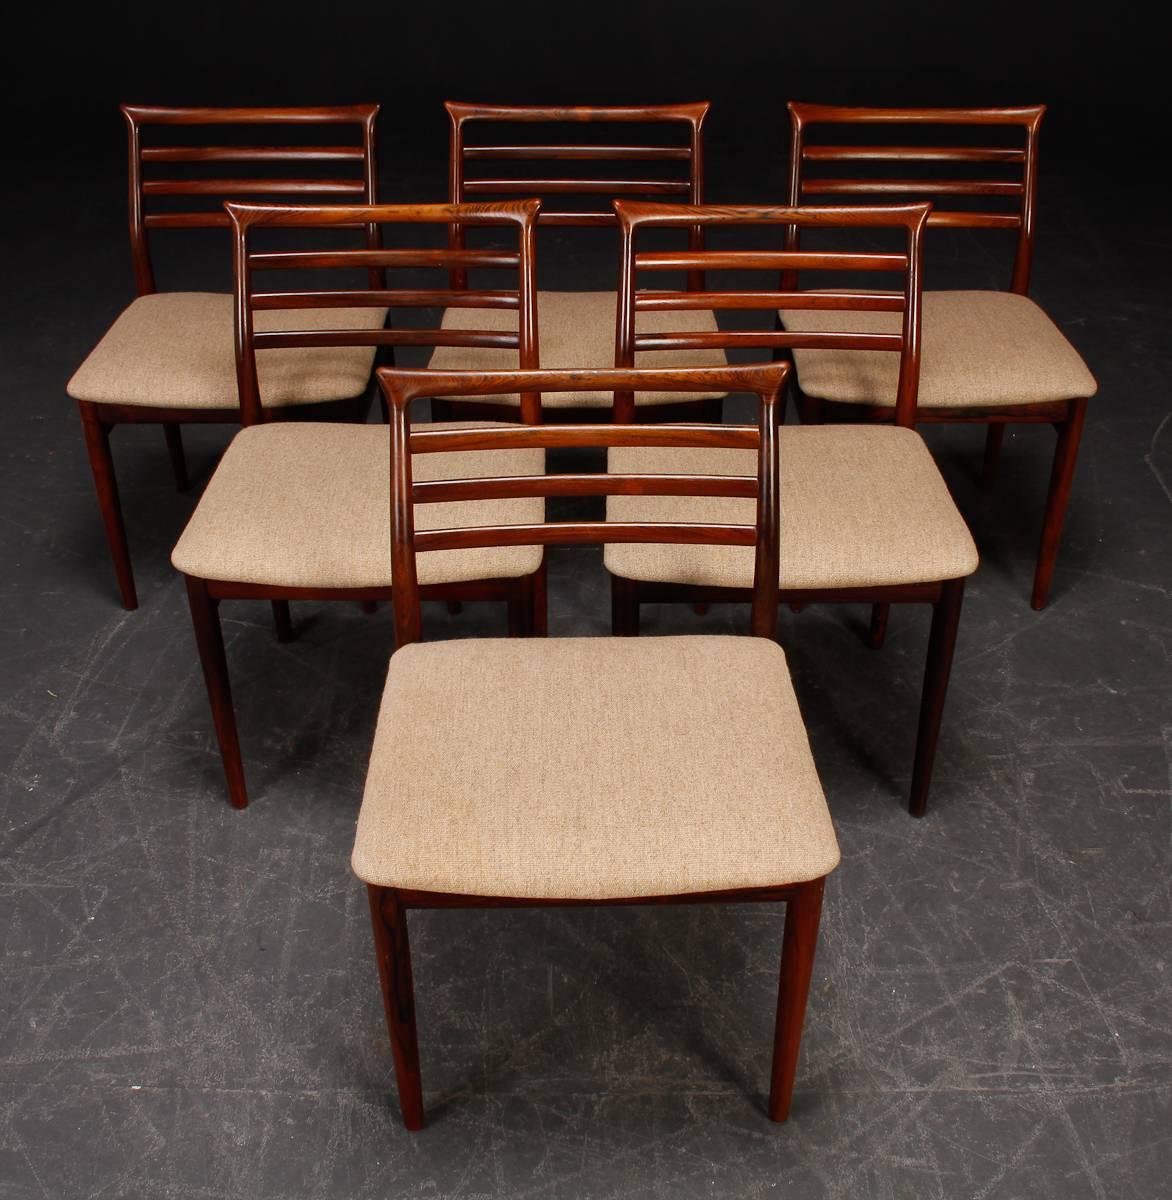 Chaises de salle à manger conçues par Erling Torvits pour Sorø stolefabrik au Danemark. Bois massif sculpté à la main.
Bois et tapisserie restaurés.
Délai de livraison d'environ 3-4 semaines !